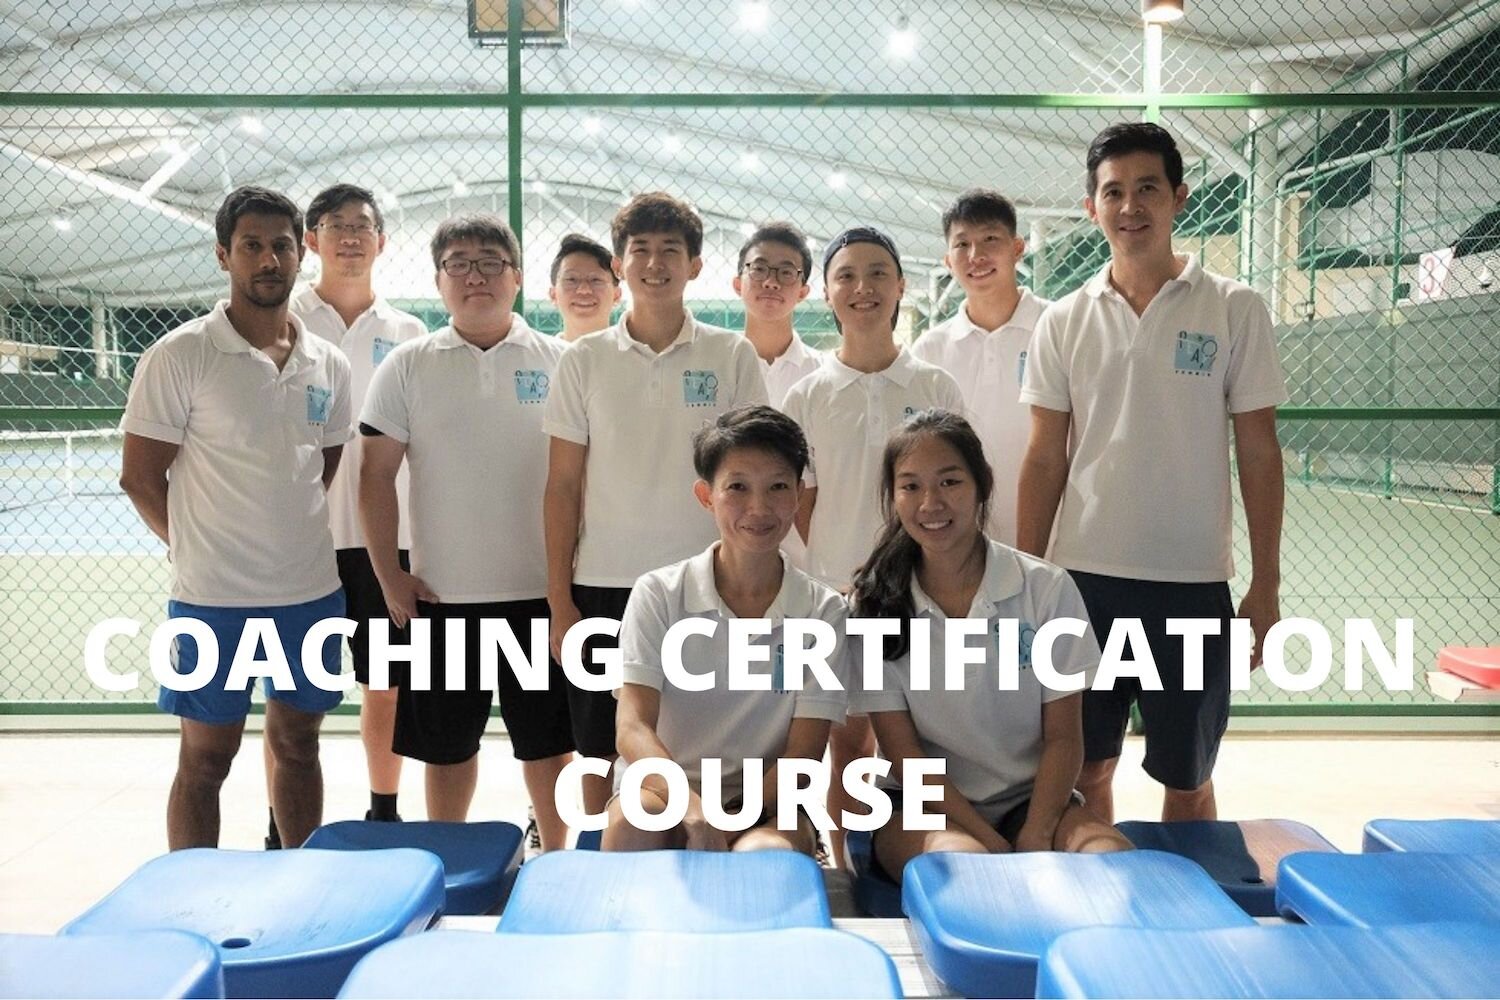 Tennis Coaching Certification Course